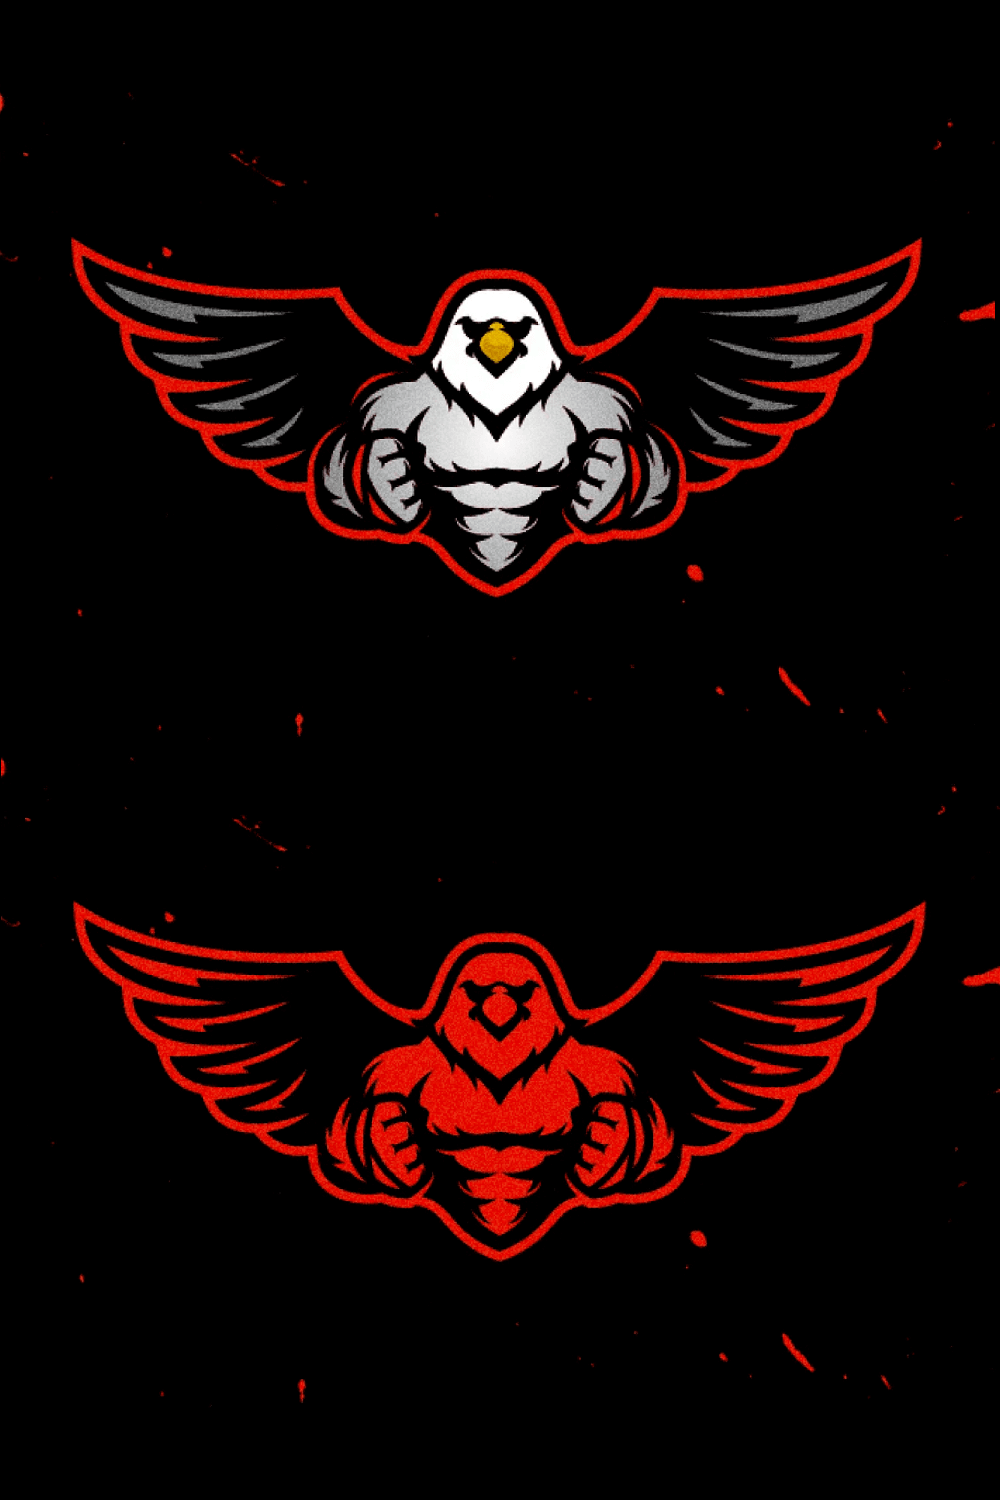 Prewiev hawk logo muscular eagle.